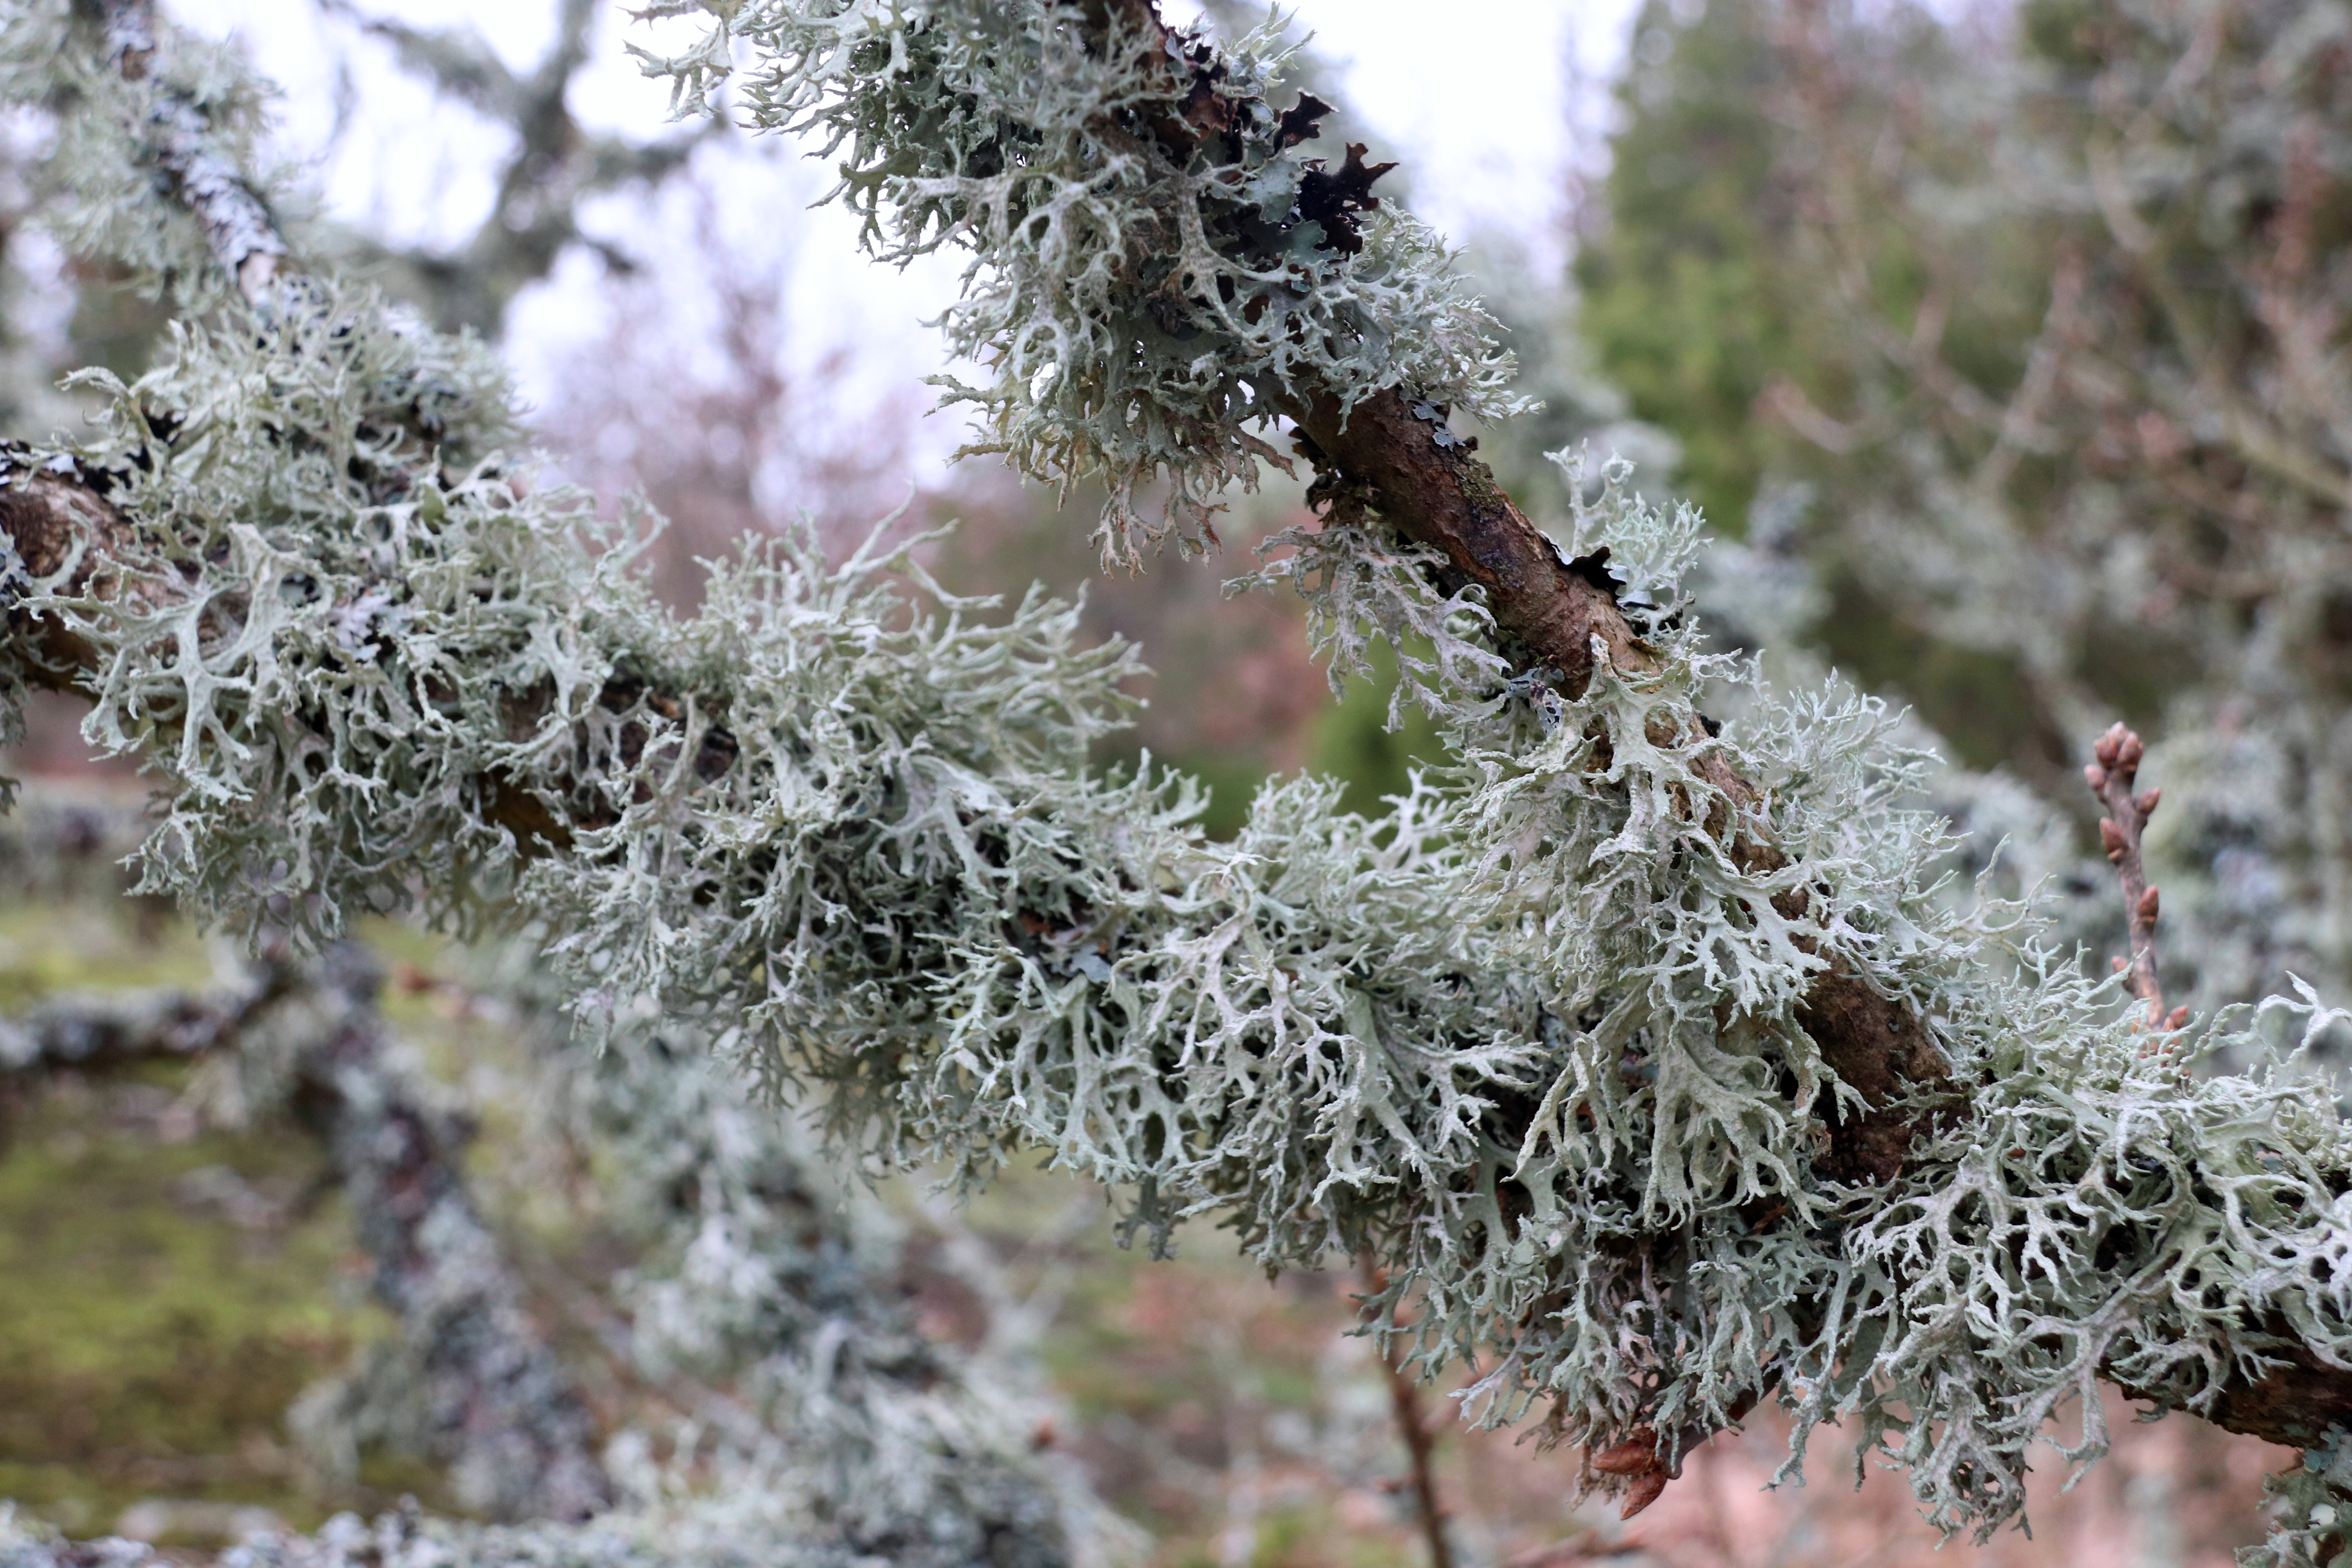 Les lichens, comme les mousses, traînent derrière eux une mauvaise réputation de parasites. Copyright (c) 2020 Kent Johnsen/Shutterstock.